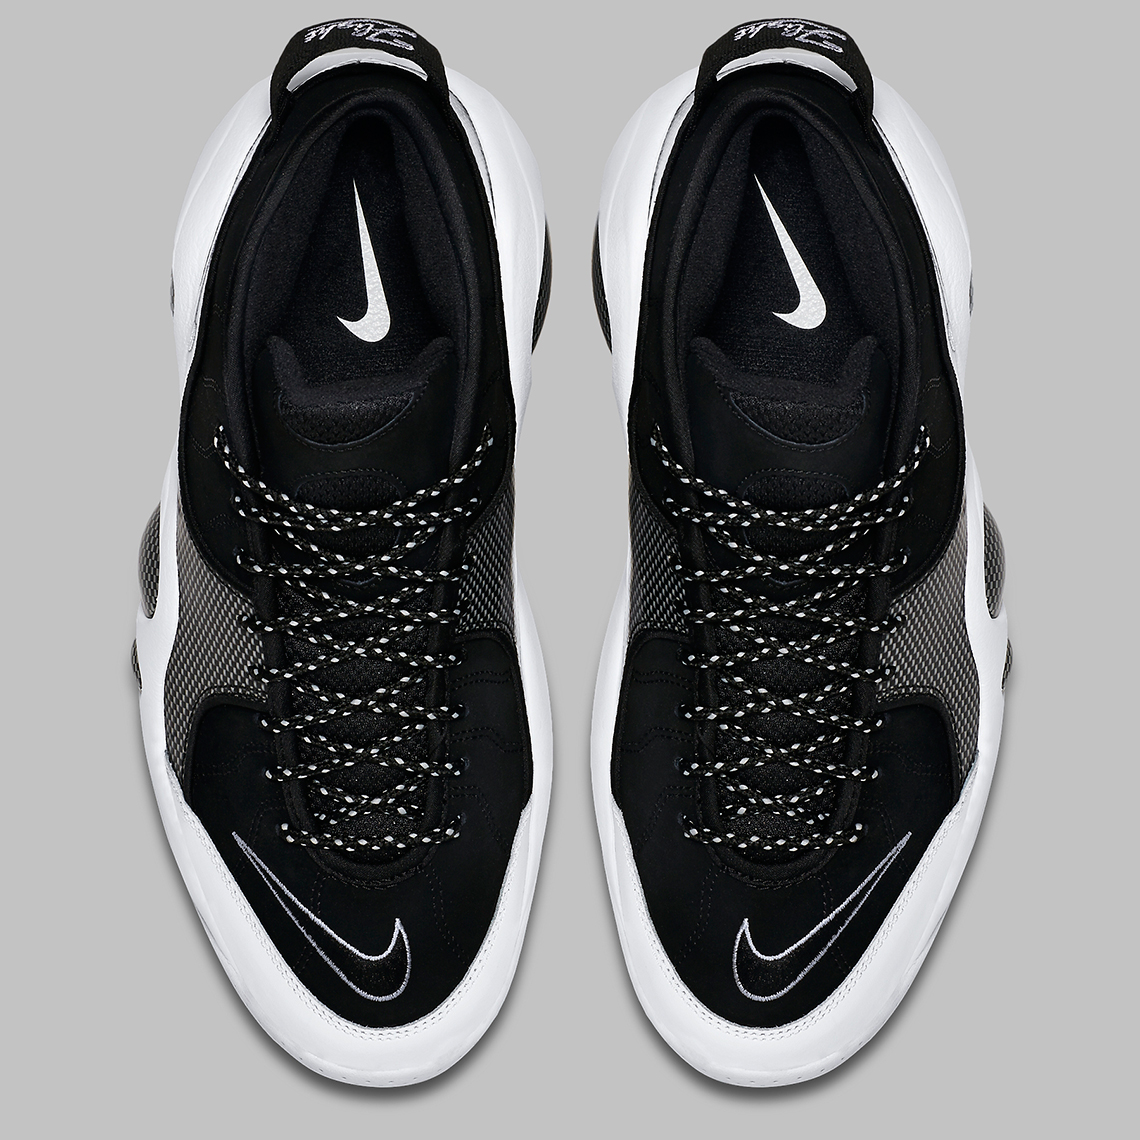 Nike Zoom Flight 95 Og Black White 2022 Release Date 1